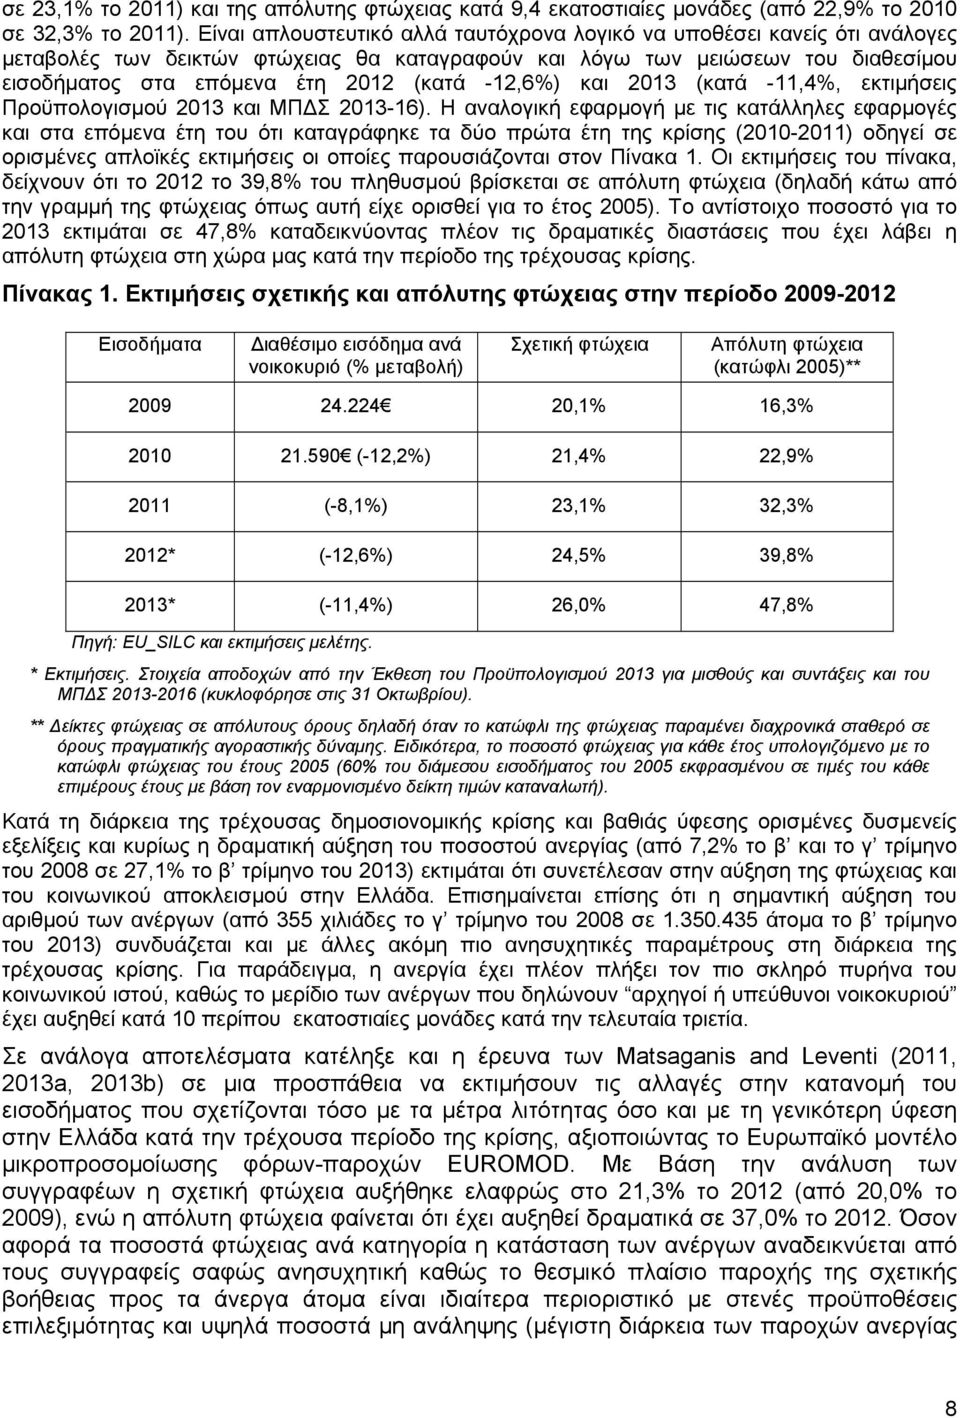 -12,6) και 2013 (κατά -11,4, εκτιµήσεις Προϋπολογισµού 2013 και ΜΠ Σ 2013-16).